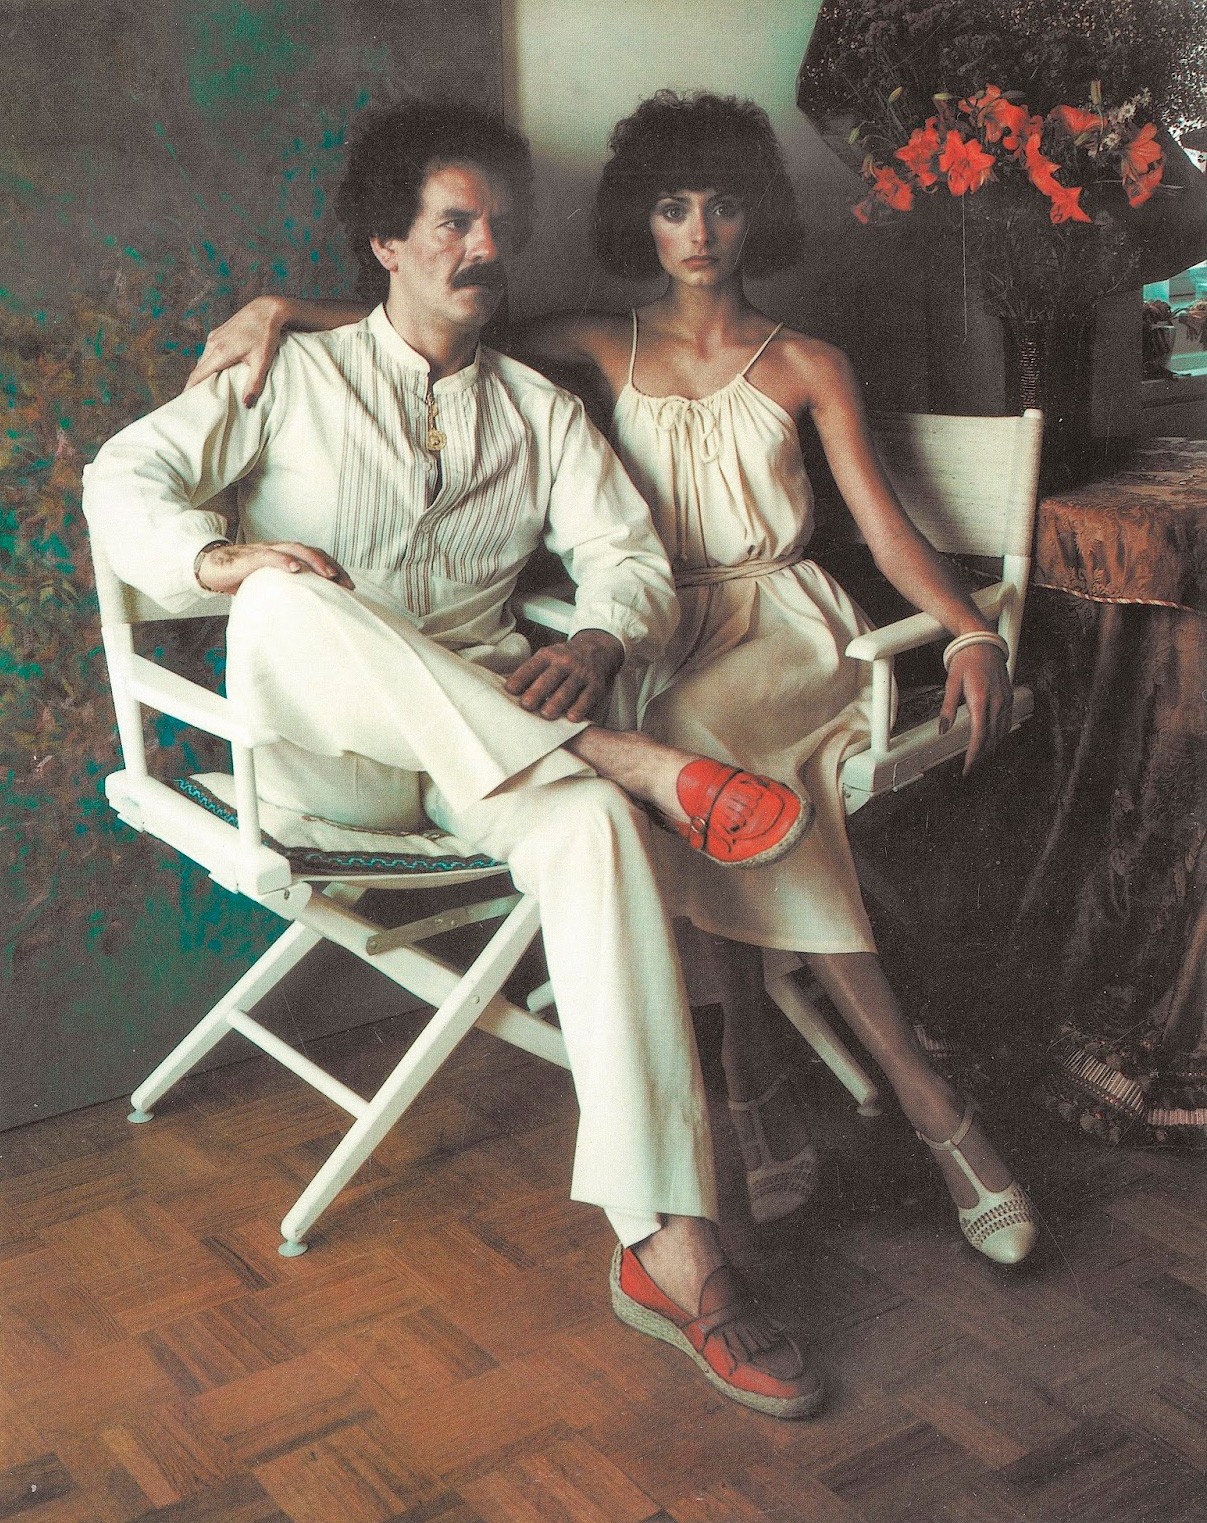 Джули и Джон, 1976 год. Фотограф Мари Косиндас